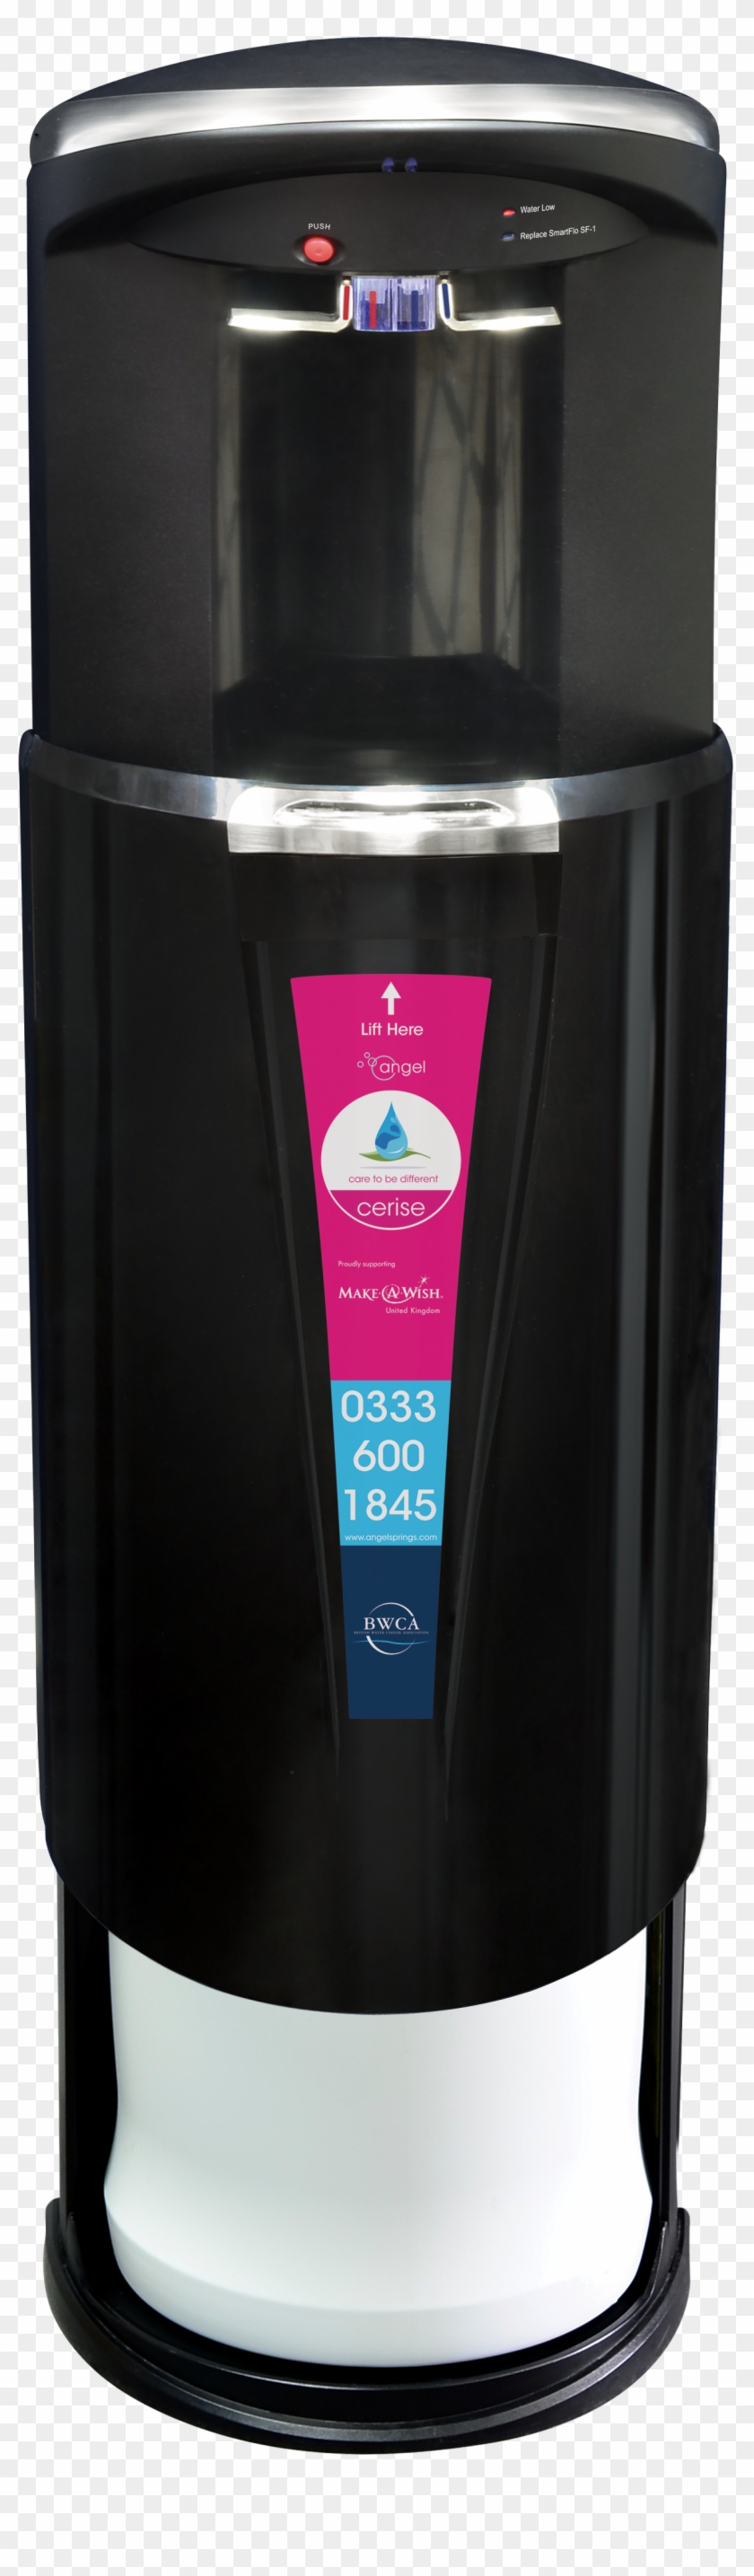 Cerise-bottom - Water Dispenser Clipart #4907848